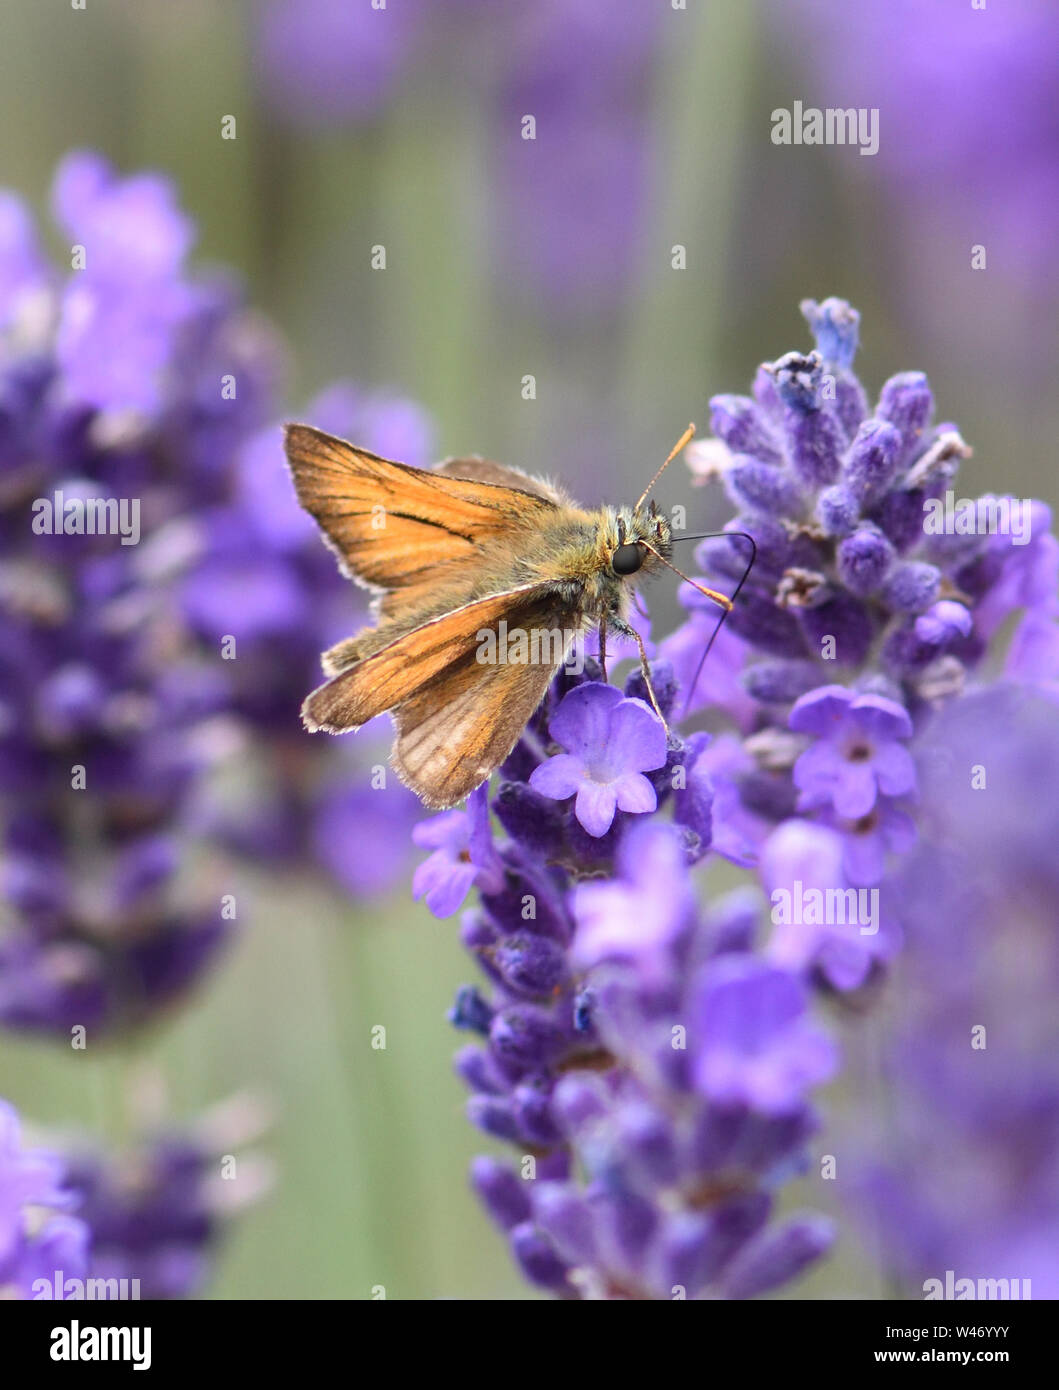 Eine kleine skipper Schmetterling (Thymelicus sylvestris) ernähren sich von Nektar aus einer Lavendel (Lavandula angustifolia) Blüte. Bedgebury Wald, Smarden, Ke Stockfoto